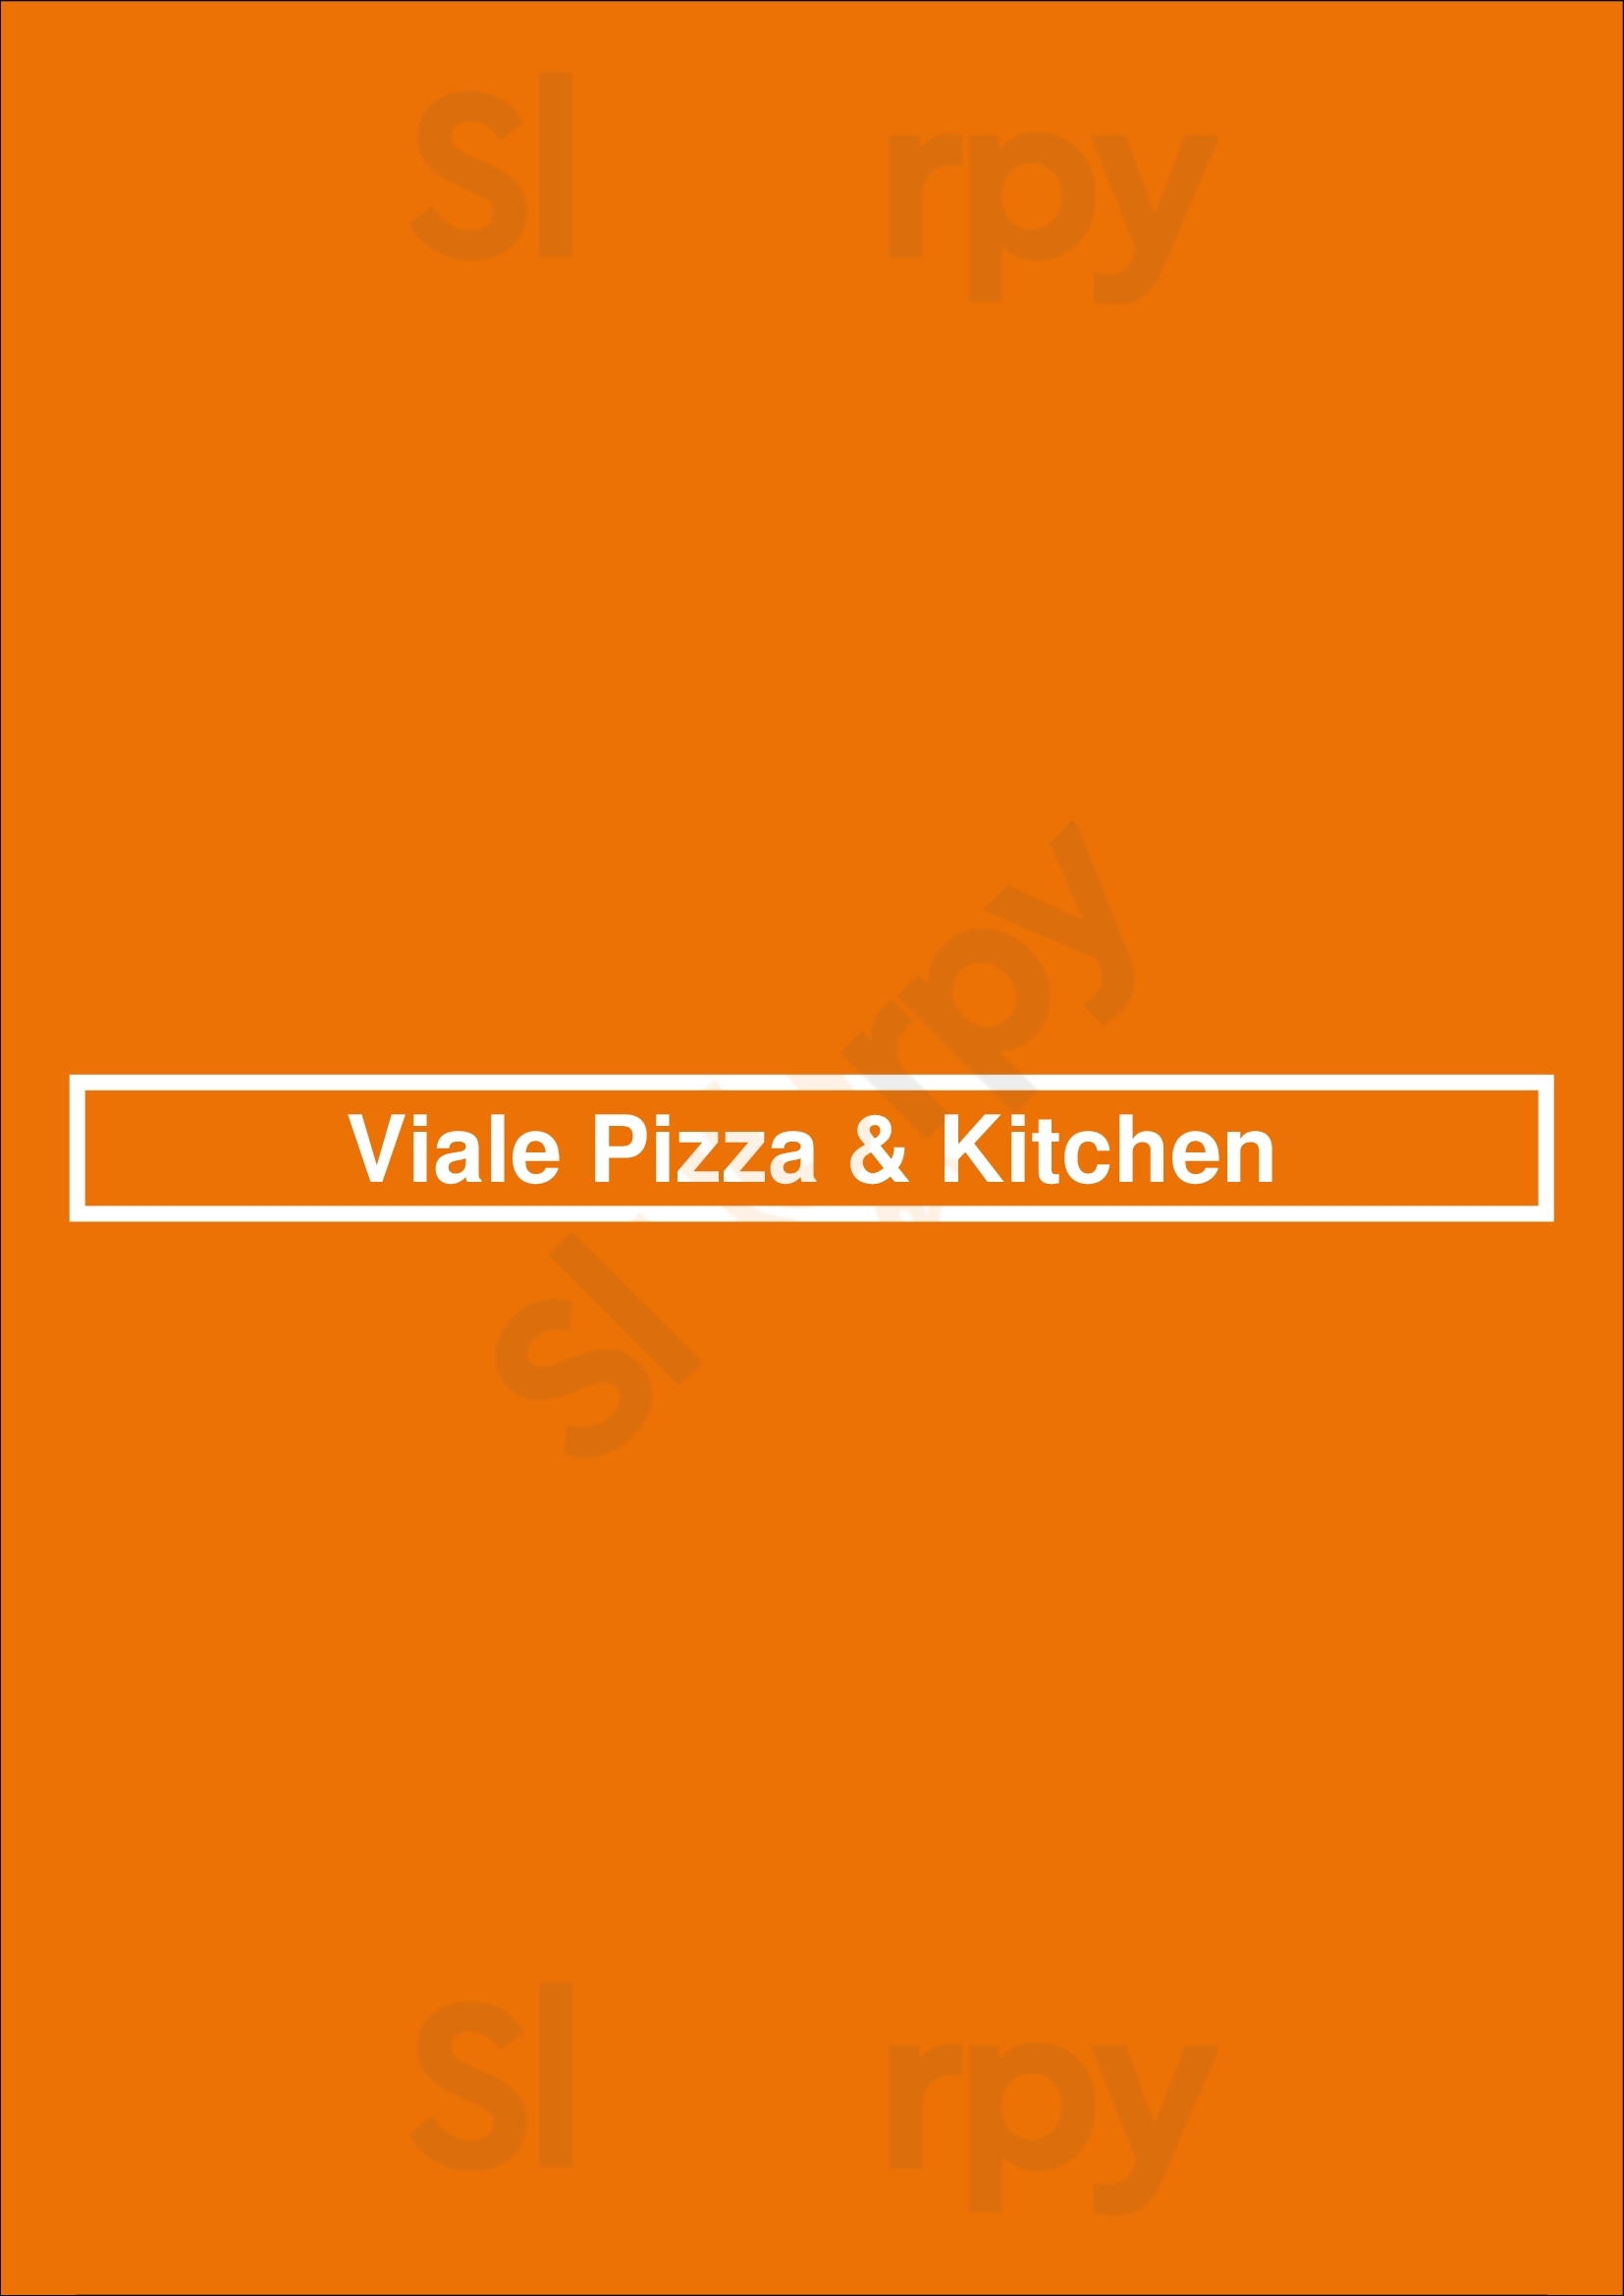 Viale Pizza & Kitchen Denver Menu - 1